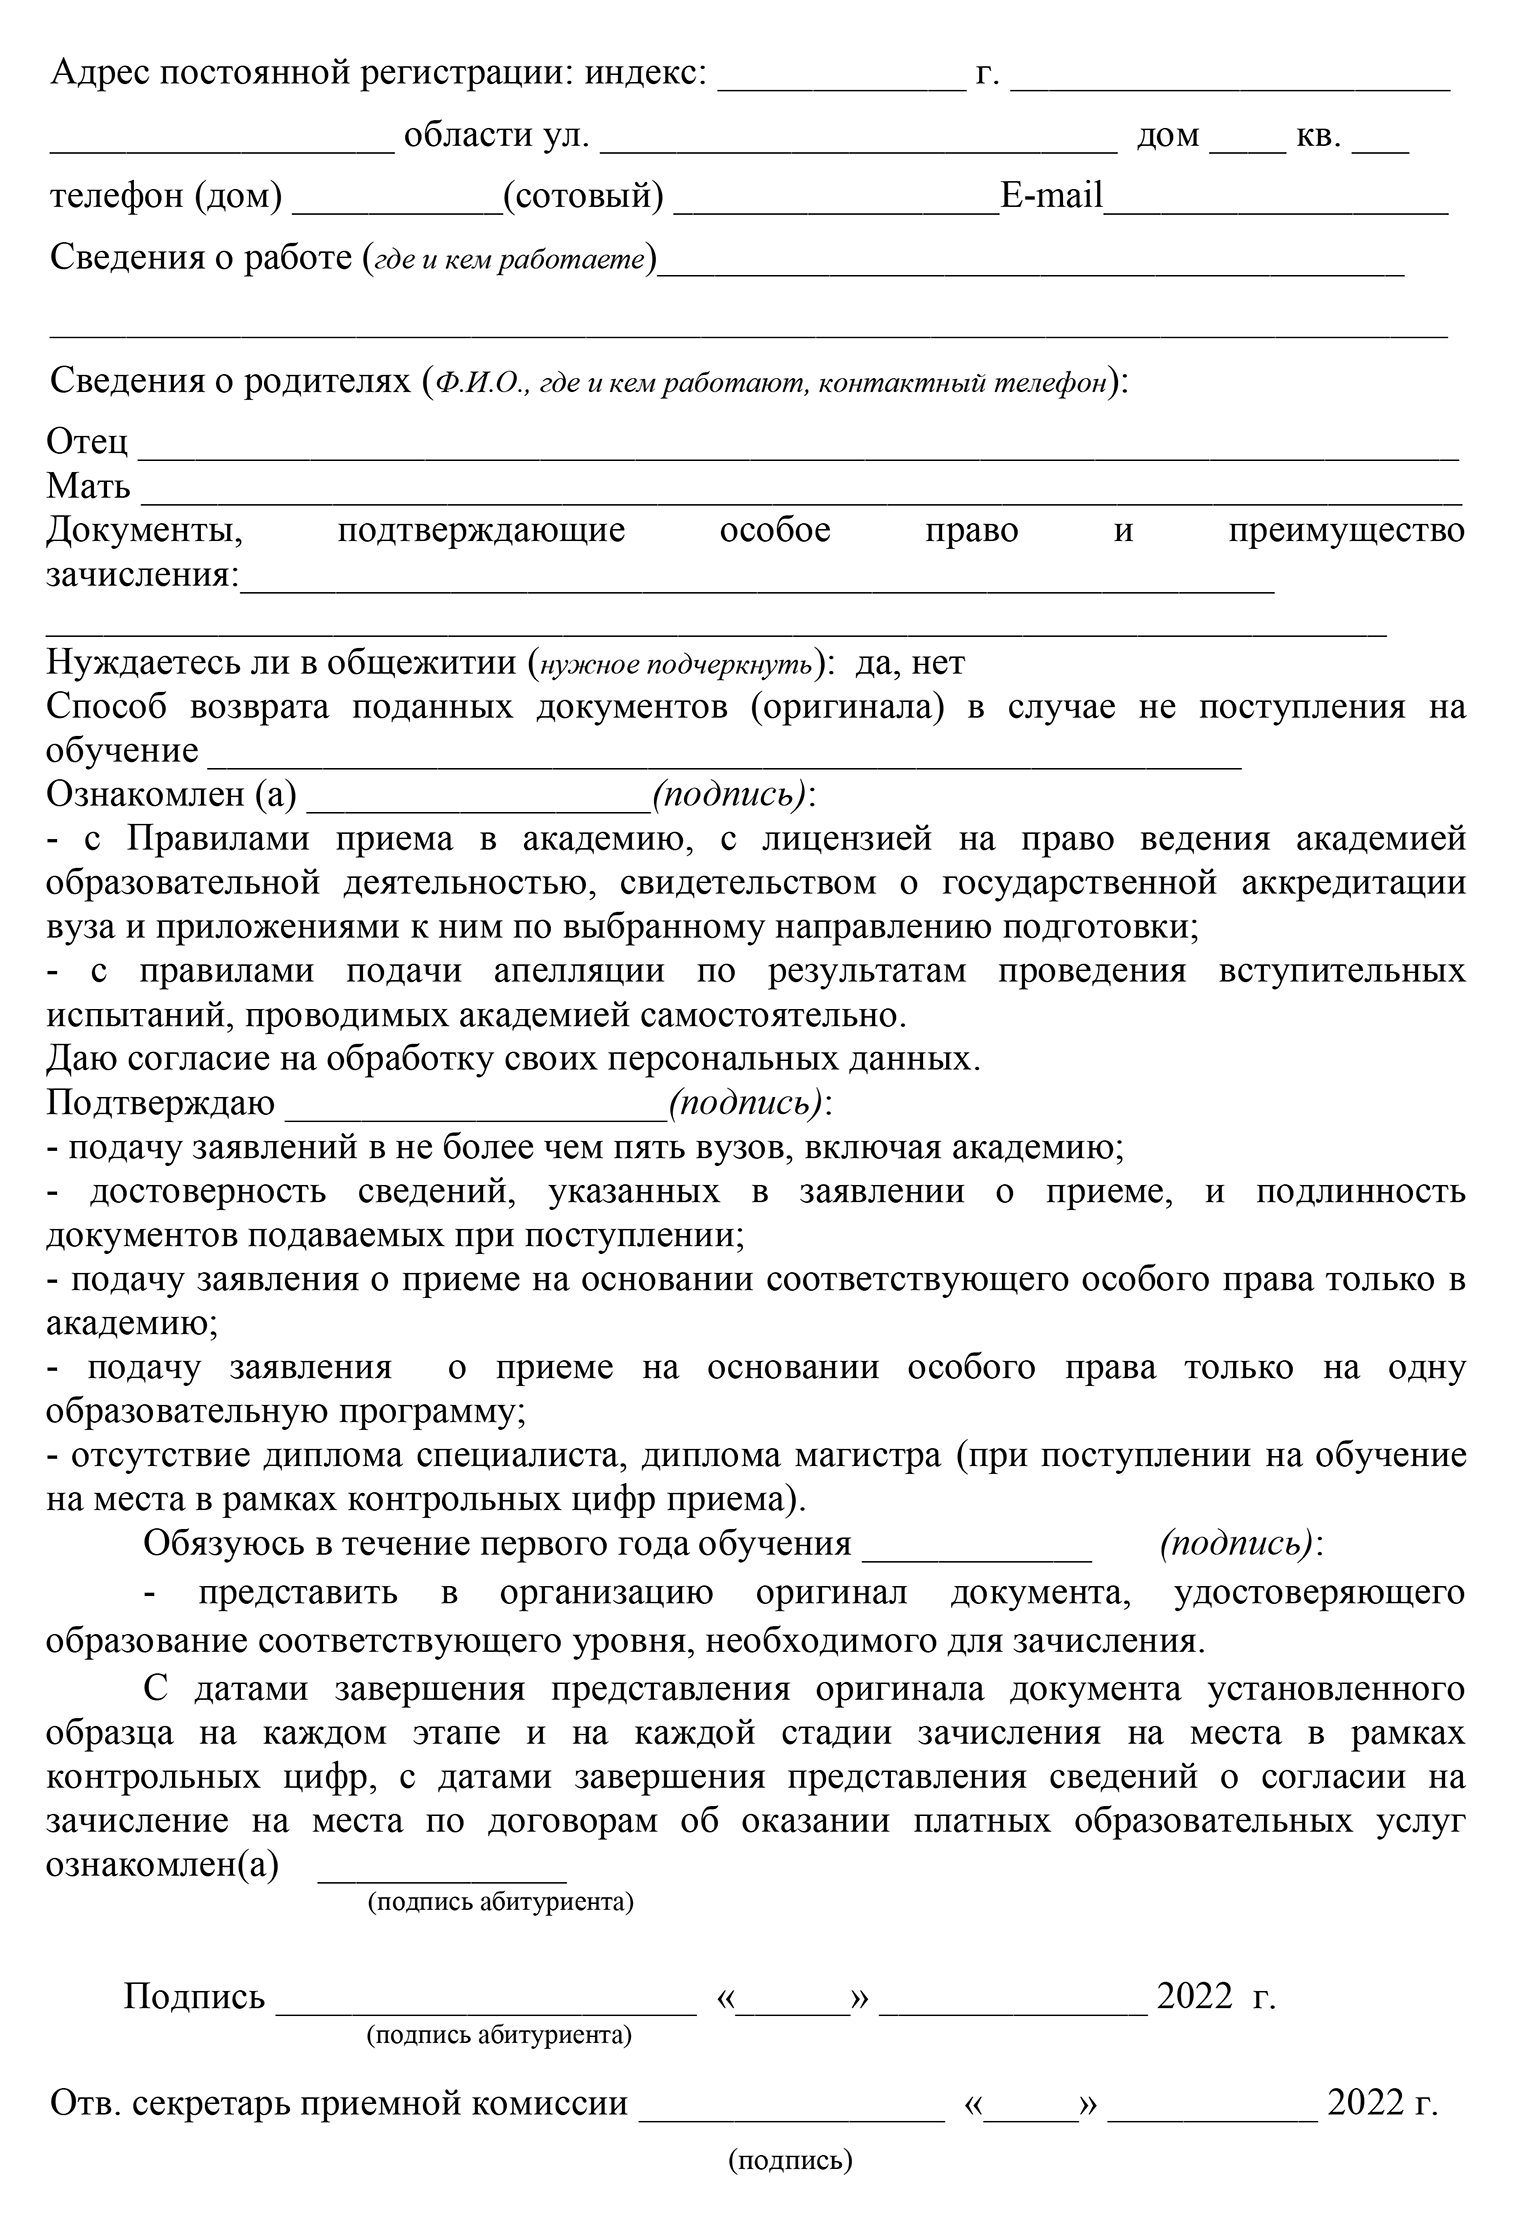 Образец заявления о приеме в магистратуру ВГАФК